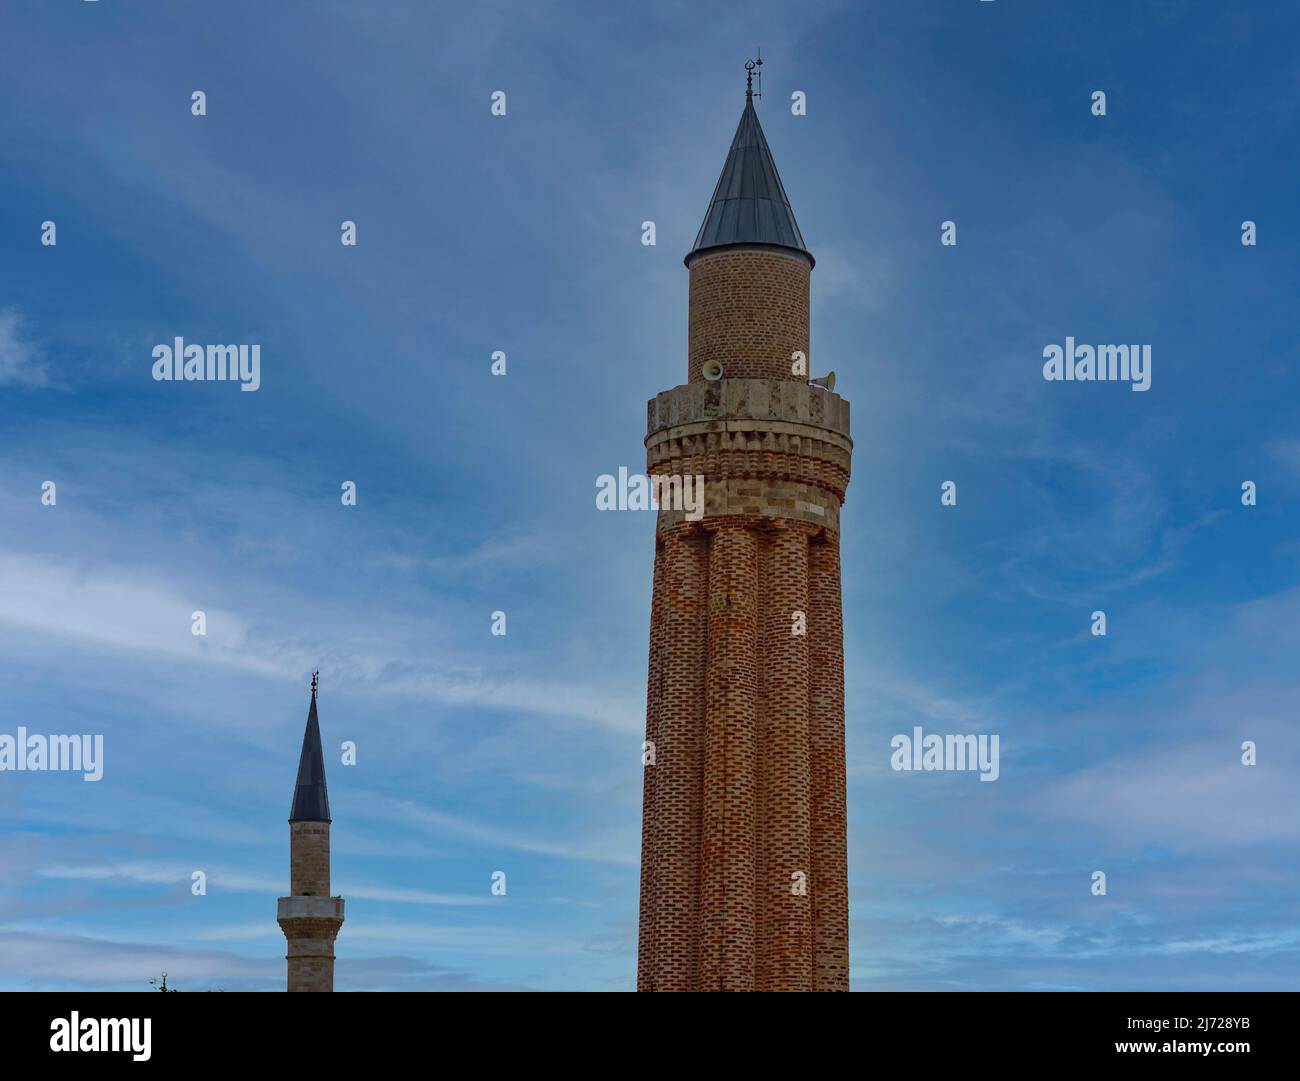 Alte Minarette mit Balkon. Historische islamische Gebäude in der Stadt auf blauem Himmel Hintergrund. Stockfoto